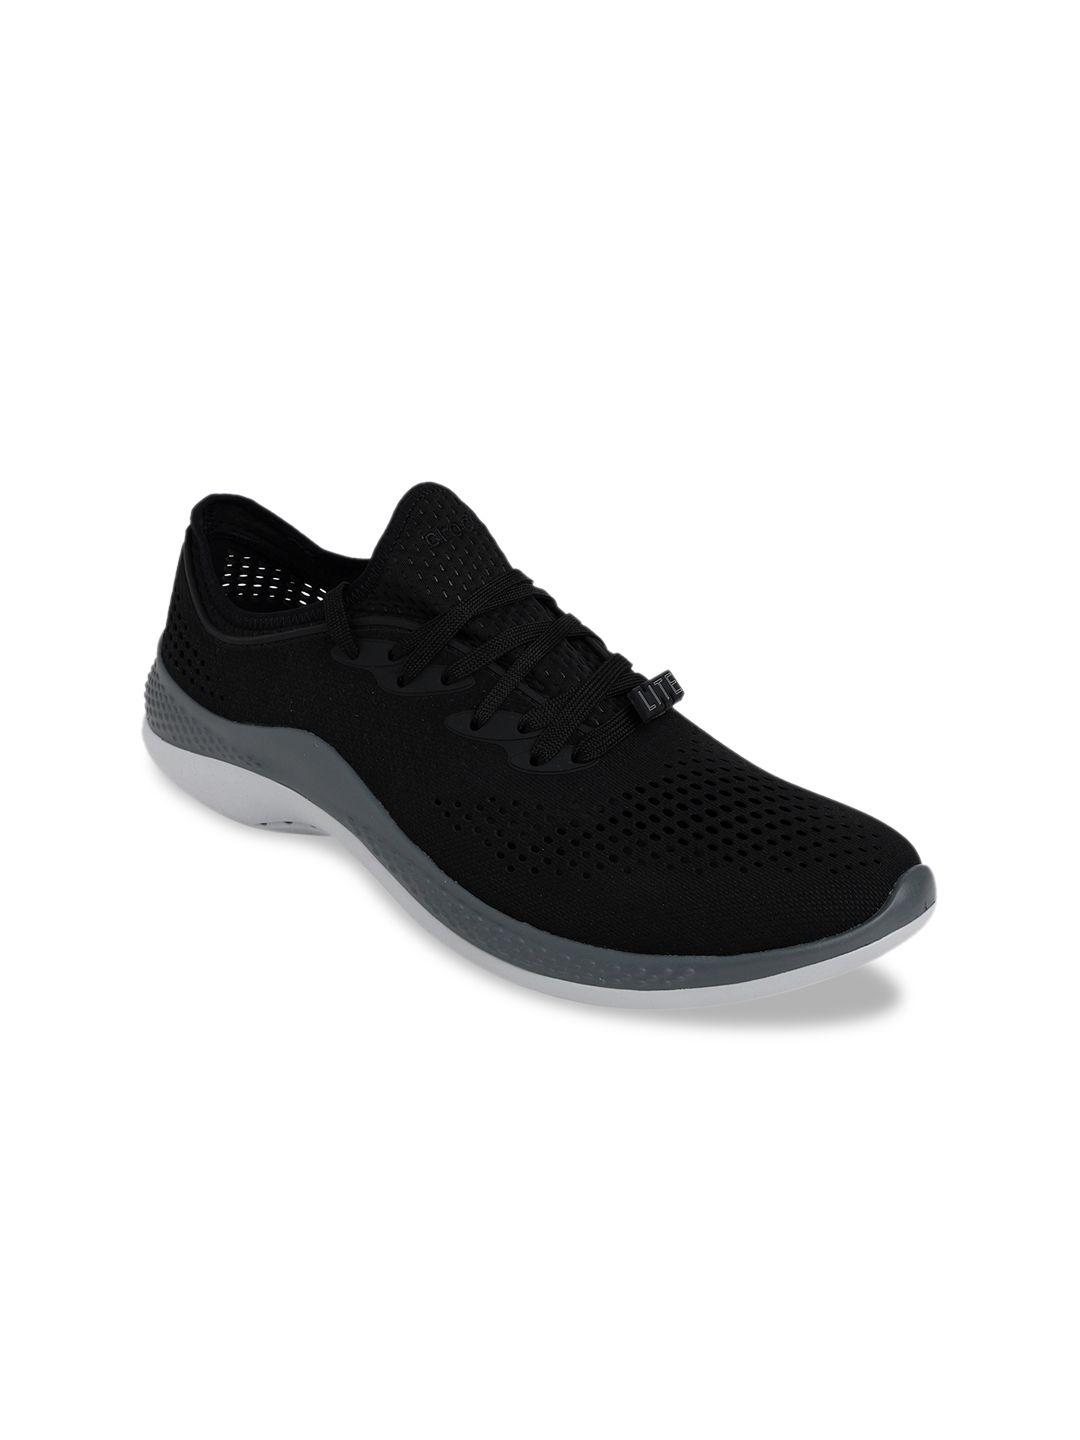 crocs-men-black-sneakers